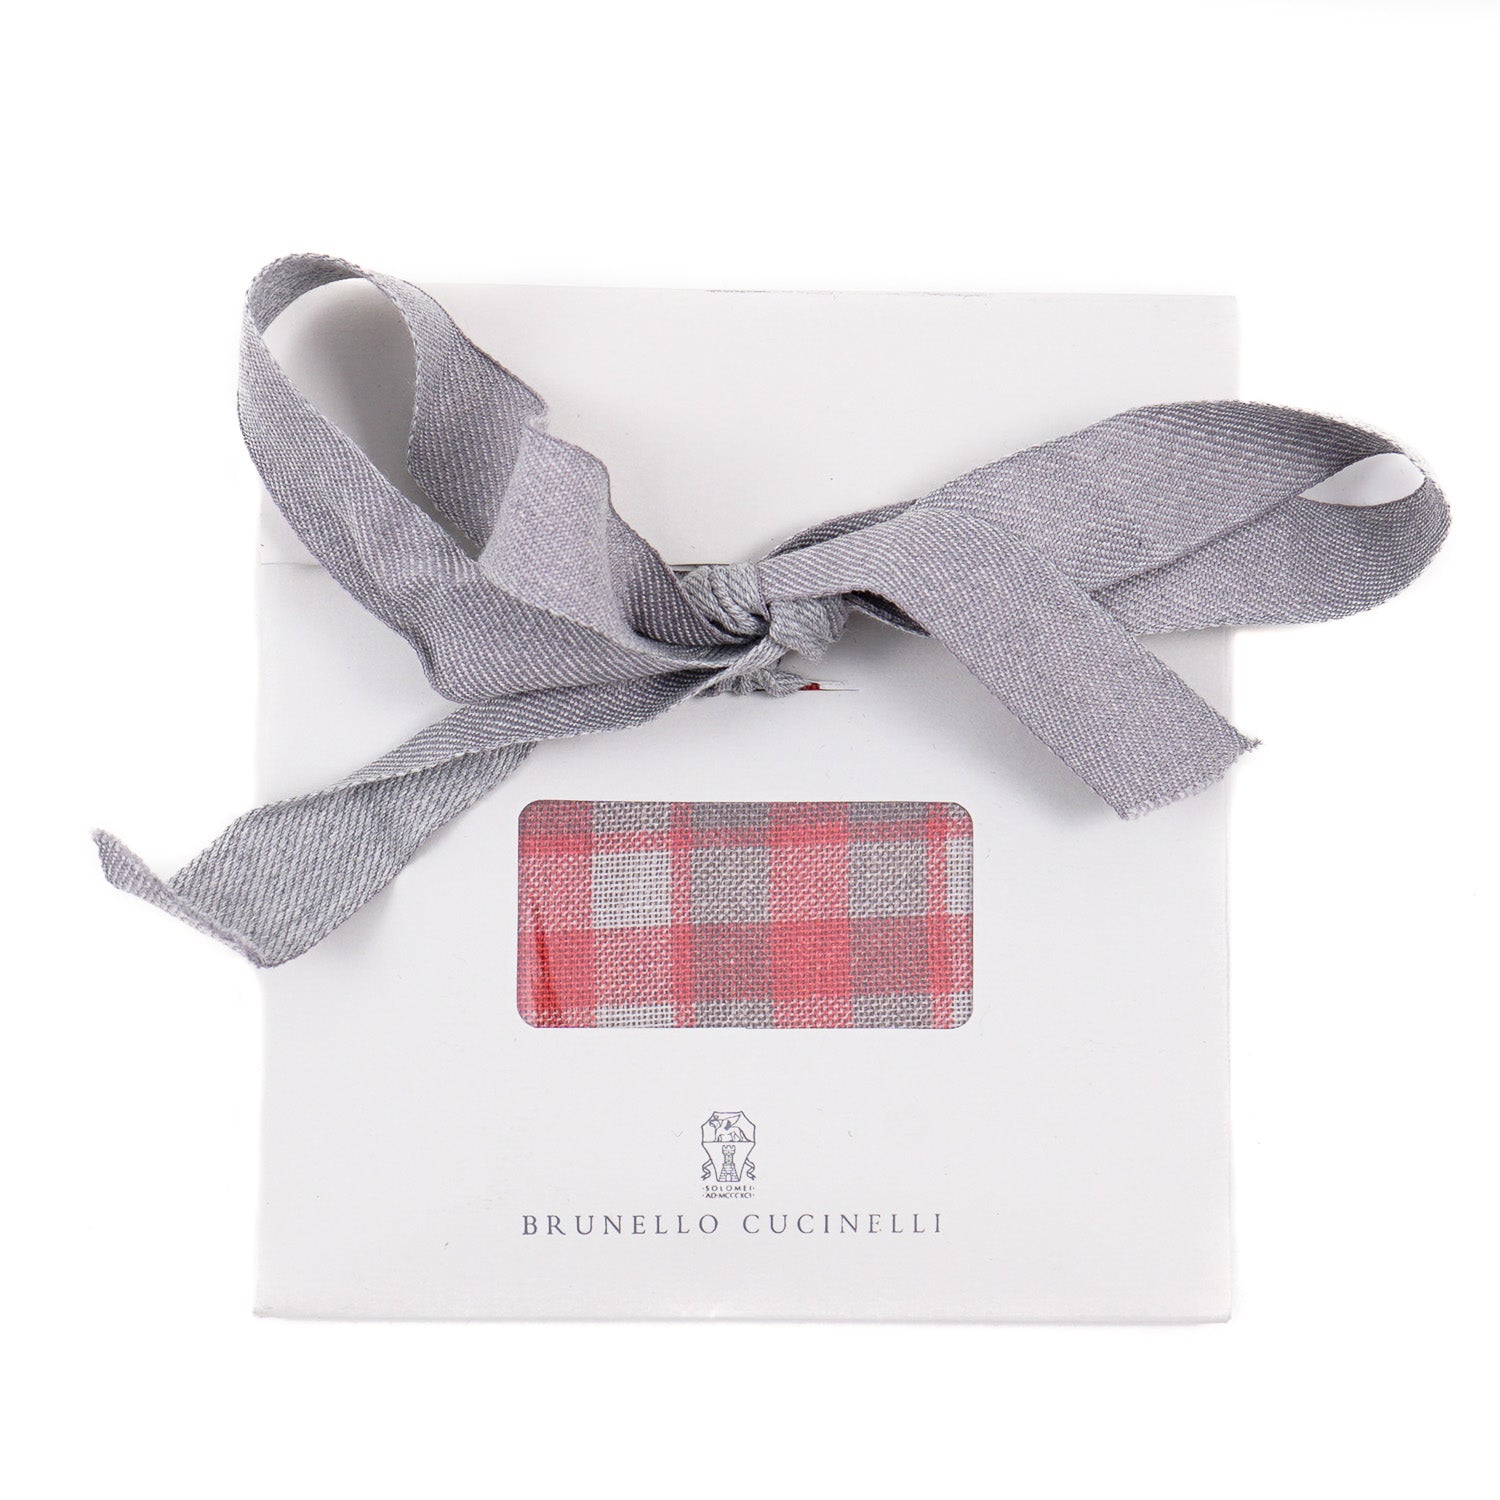 Brunello Cucinelli Linen and Cotton Pocket Square - Top Shelf Apparel